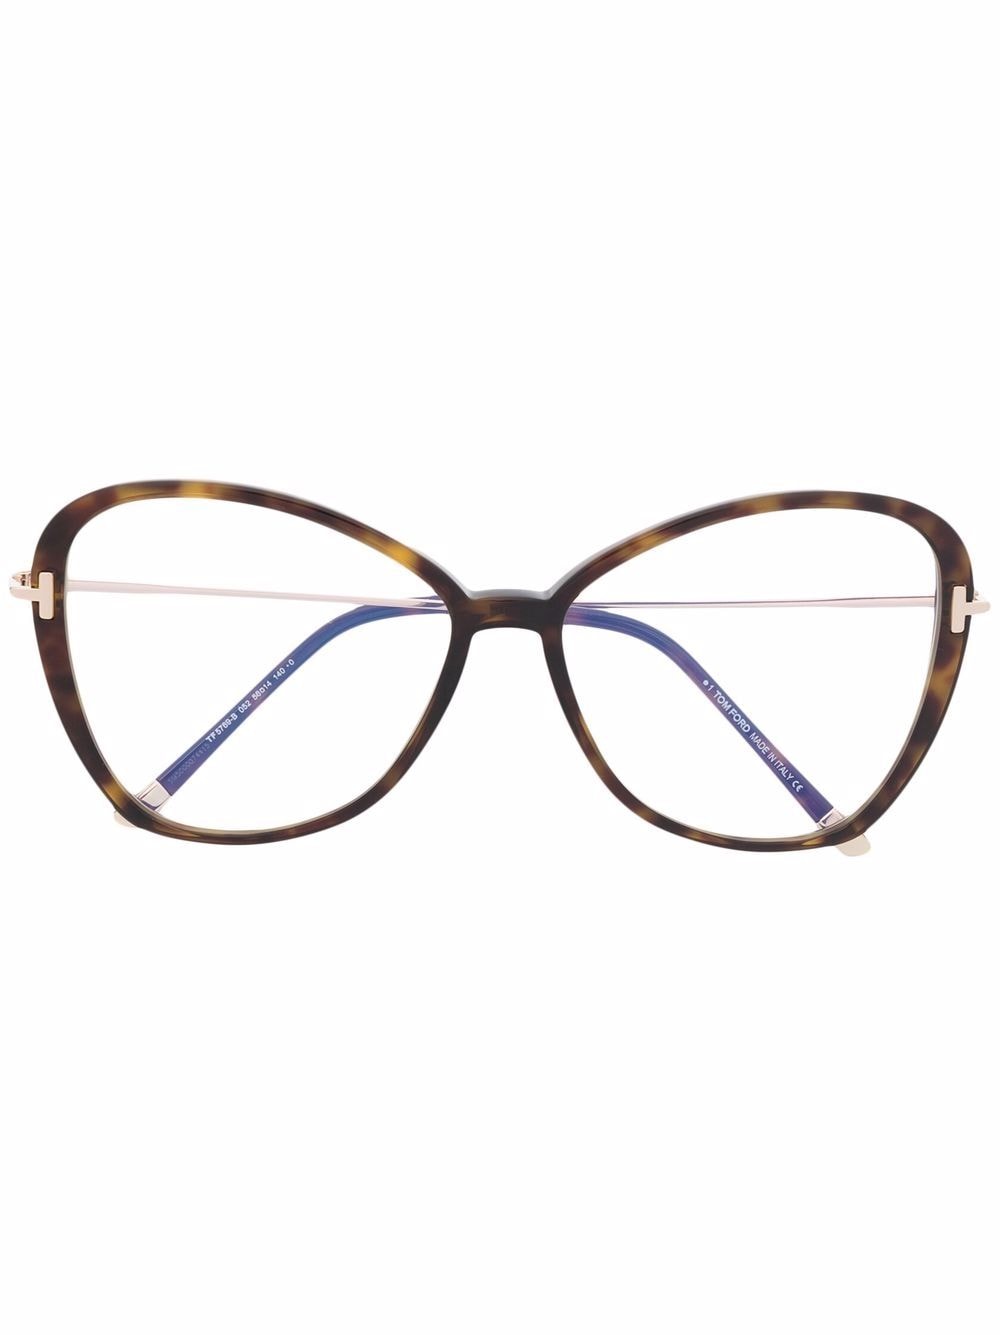 фото Tom ford eyewear глянцевые очки в массивной оправе